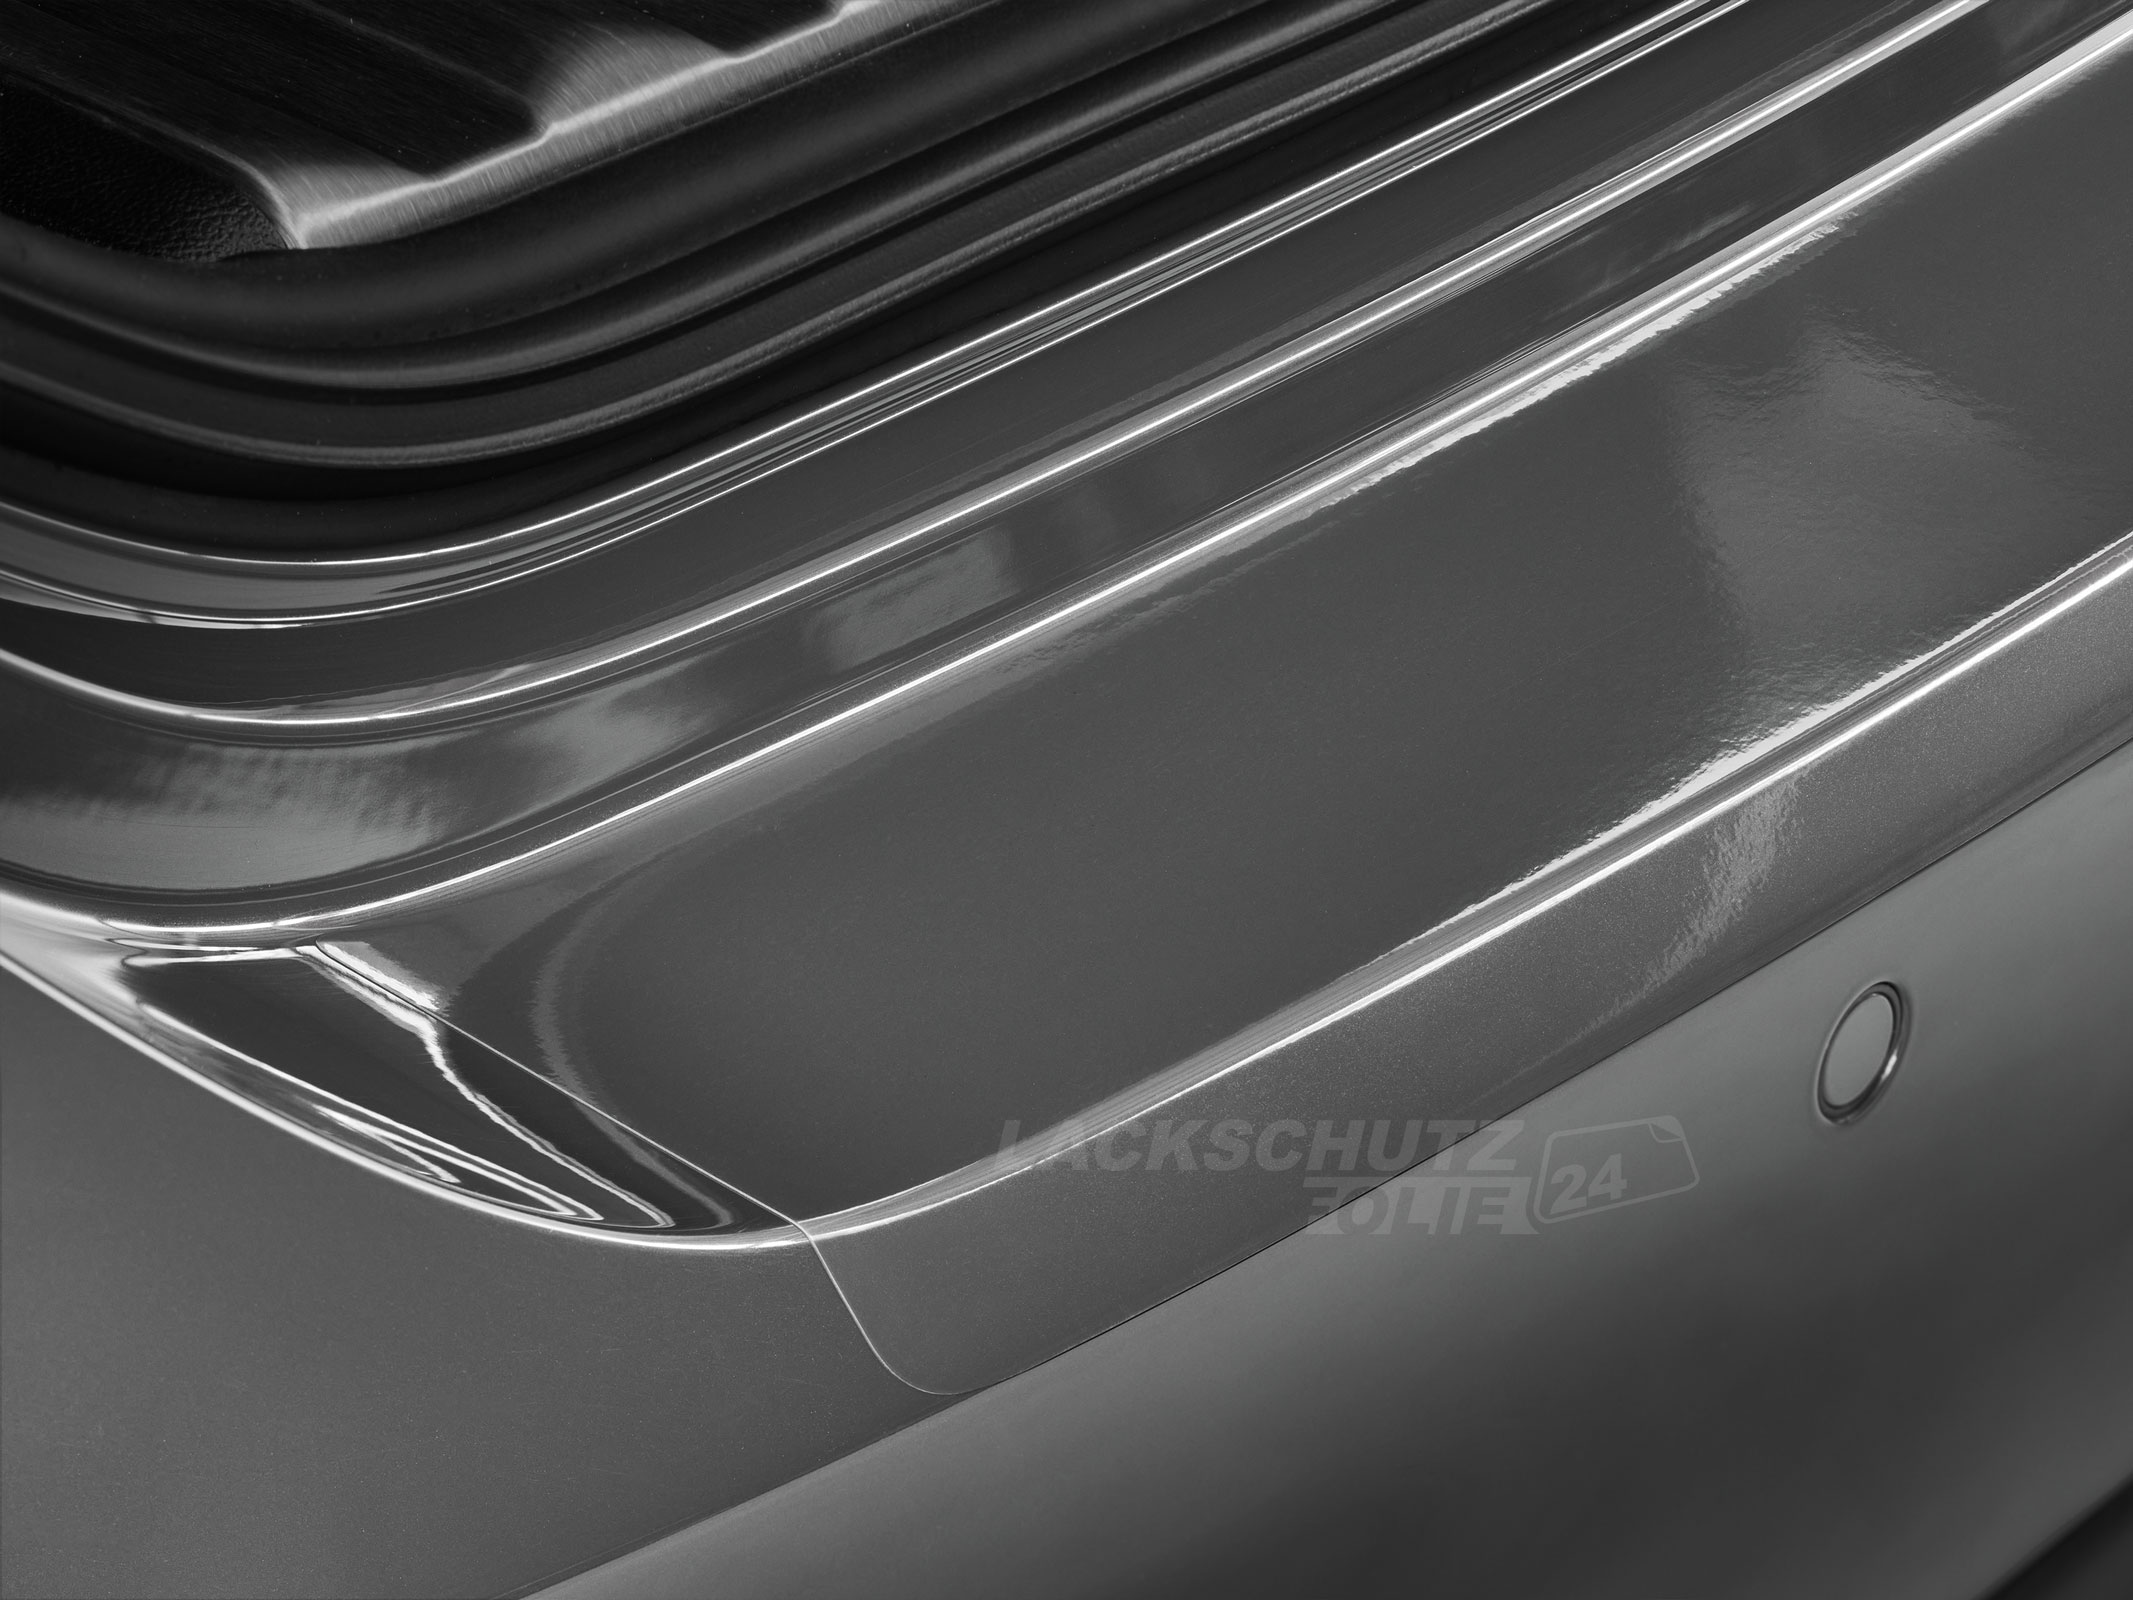 Ladekantenschutzfolie - Transparent Glatt Hochglänzend 240 µm stark für Honda CR-V (IV) ab BJ 10/2012 + Faceliftmodell